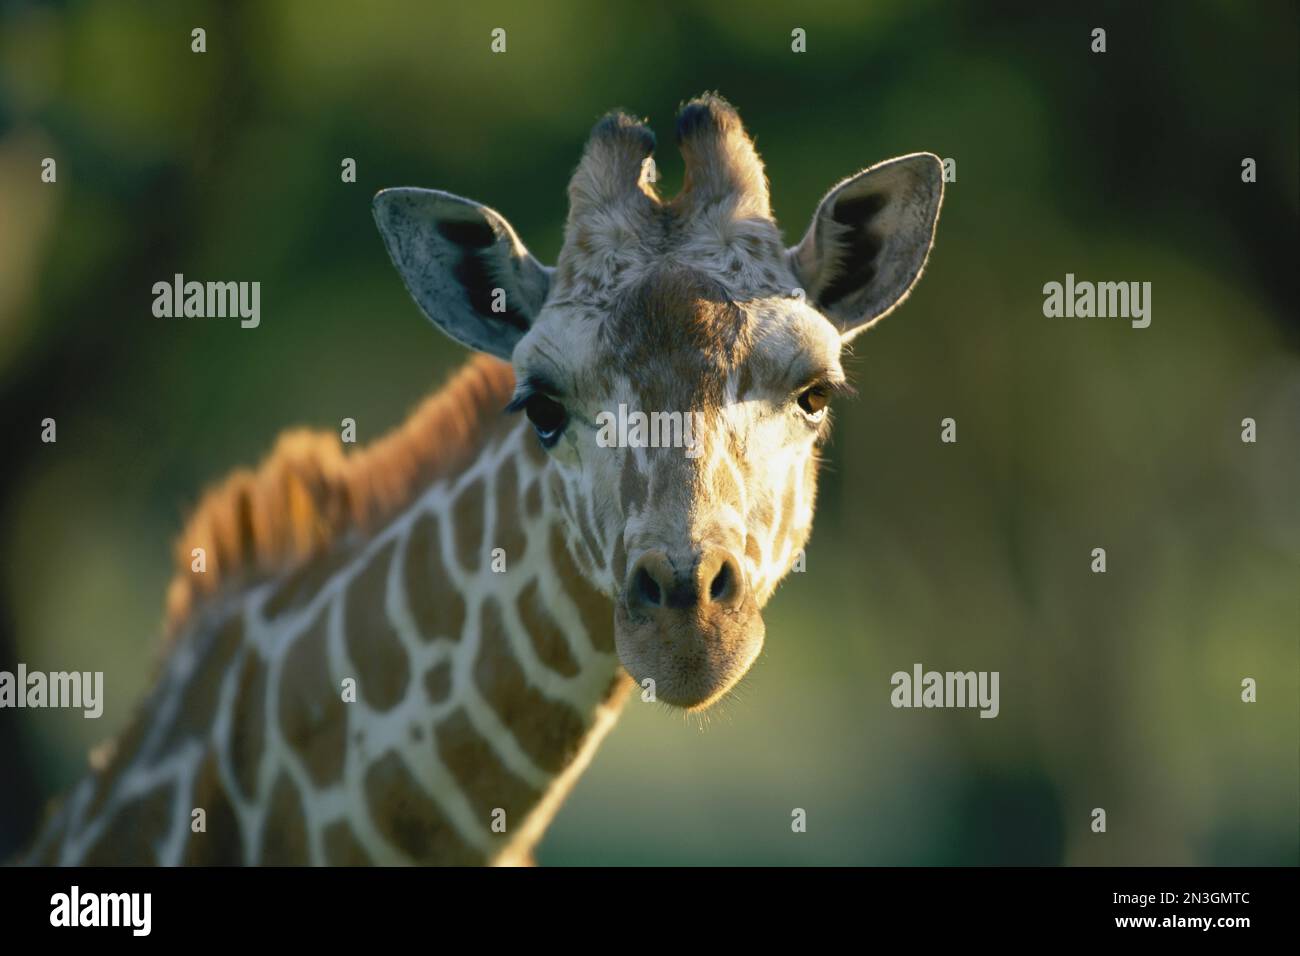 Portrait shot of a reticulated giraffe (Giraffa reticulata). Stock Photo